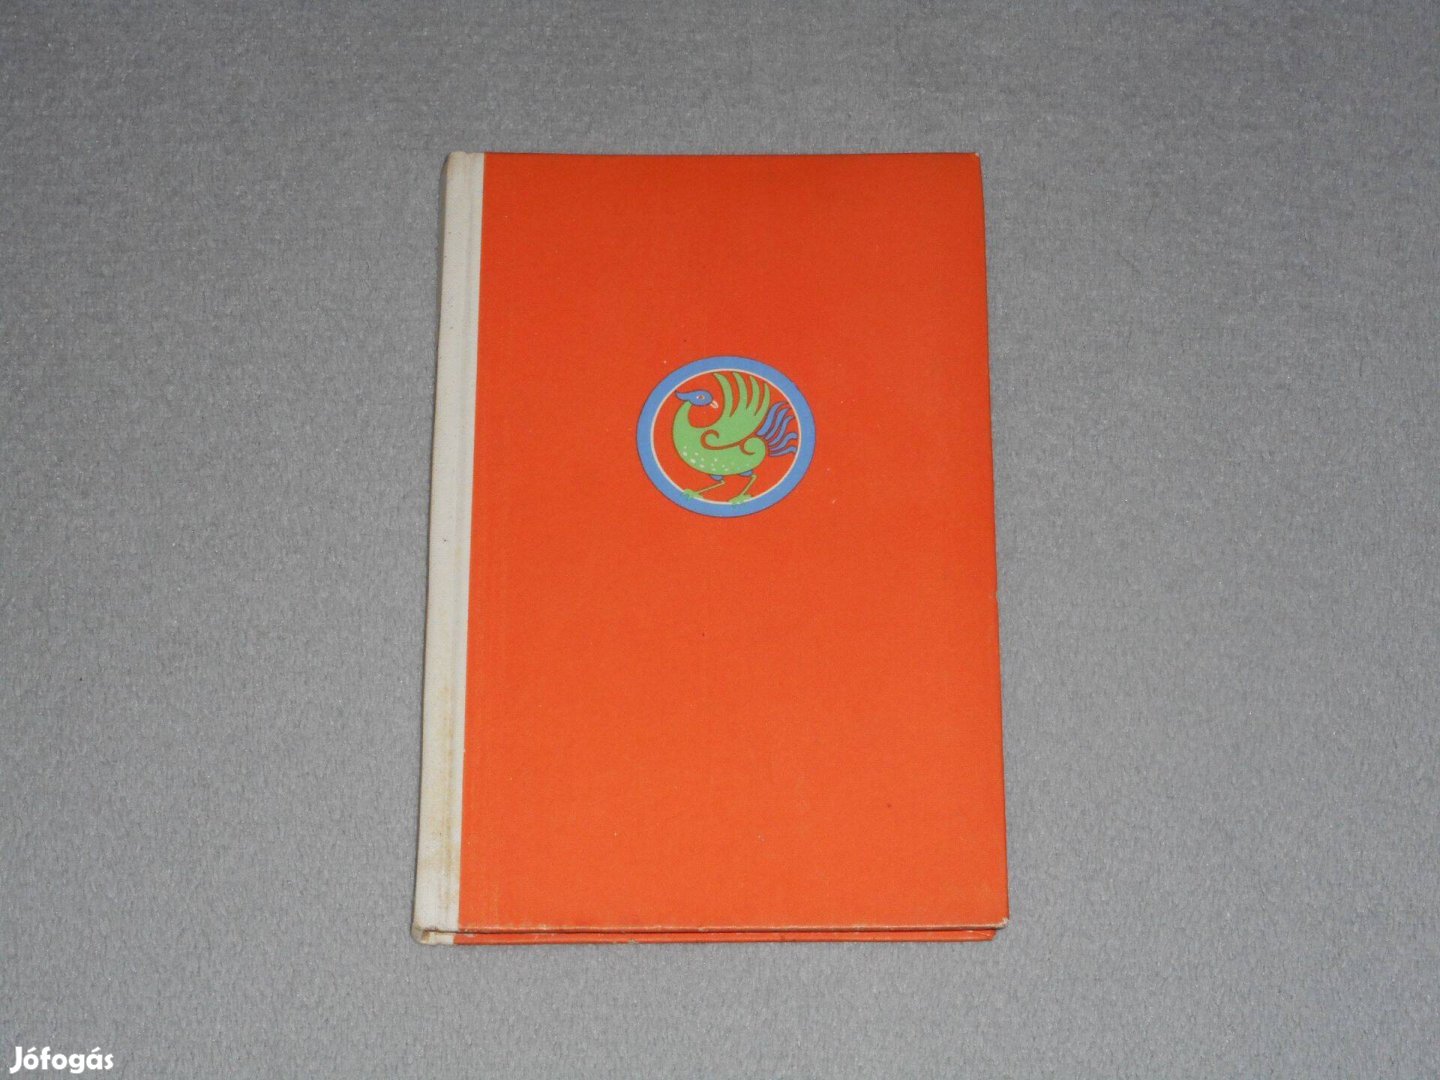 Szamárfülű kán - Tuvai népmesék (1959. Népek meséi sorozat)